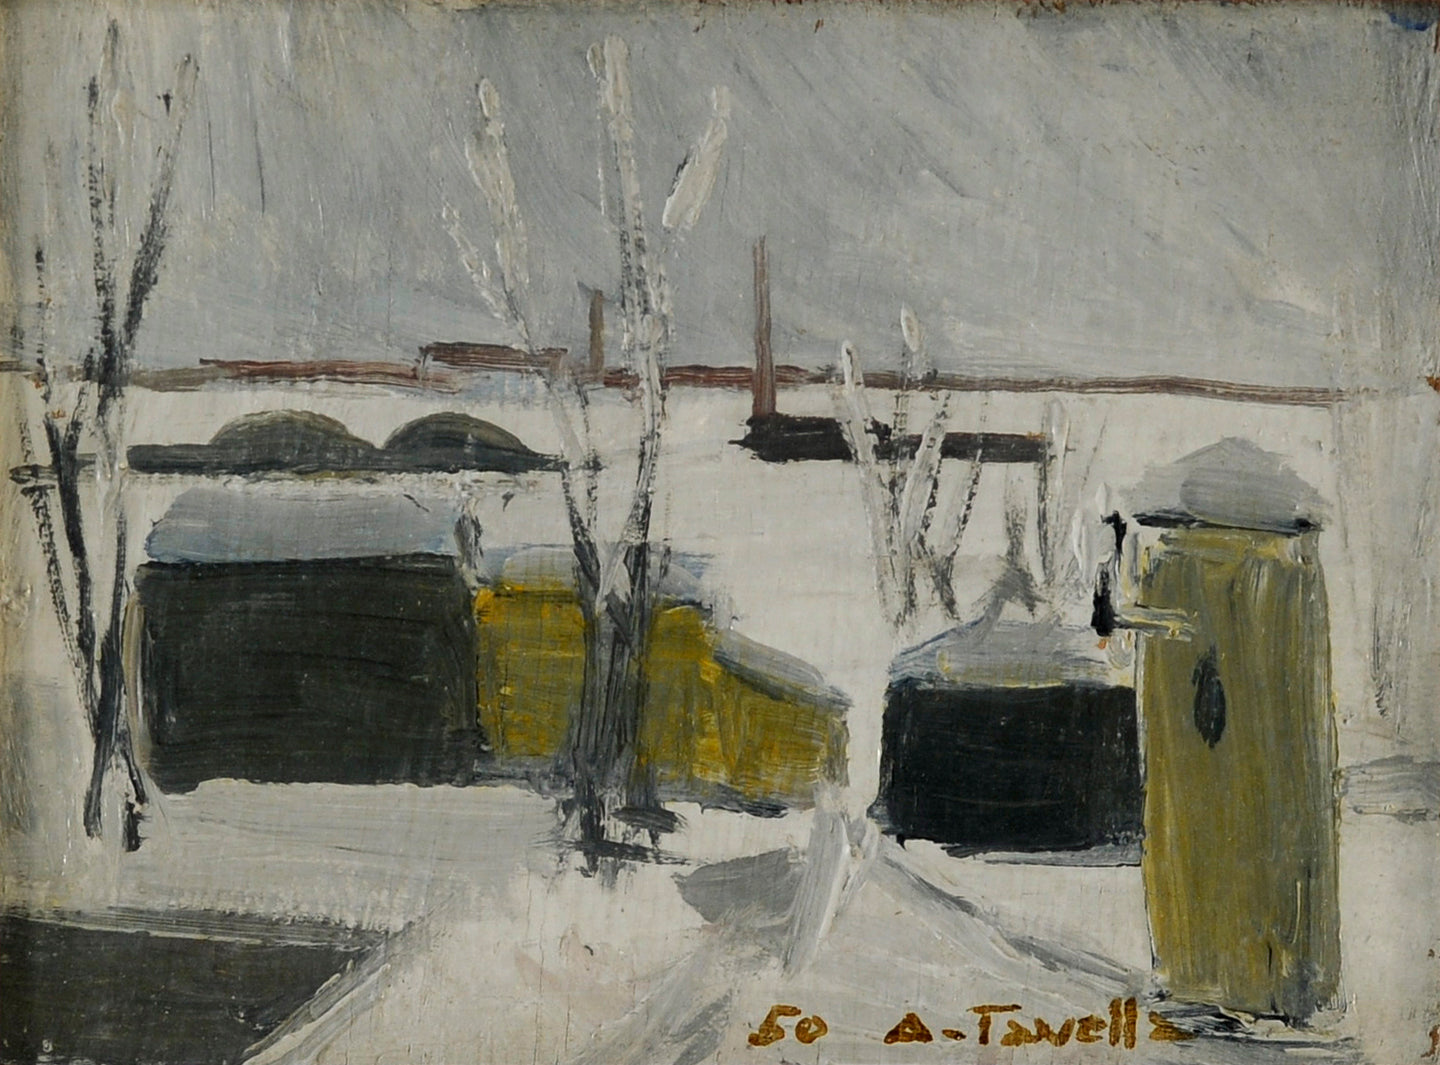 Aldo Tavella, Inverno, 1950